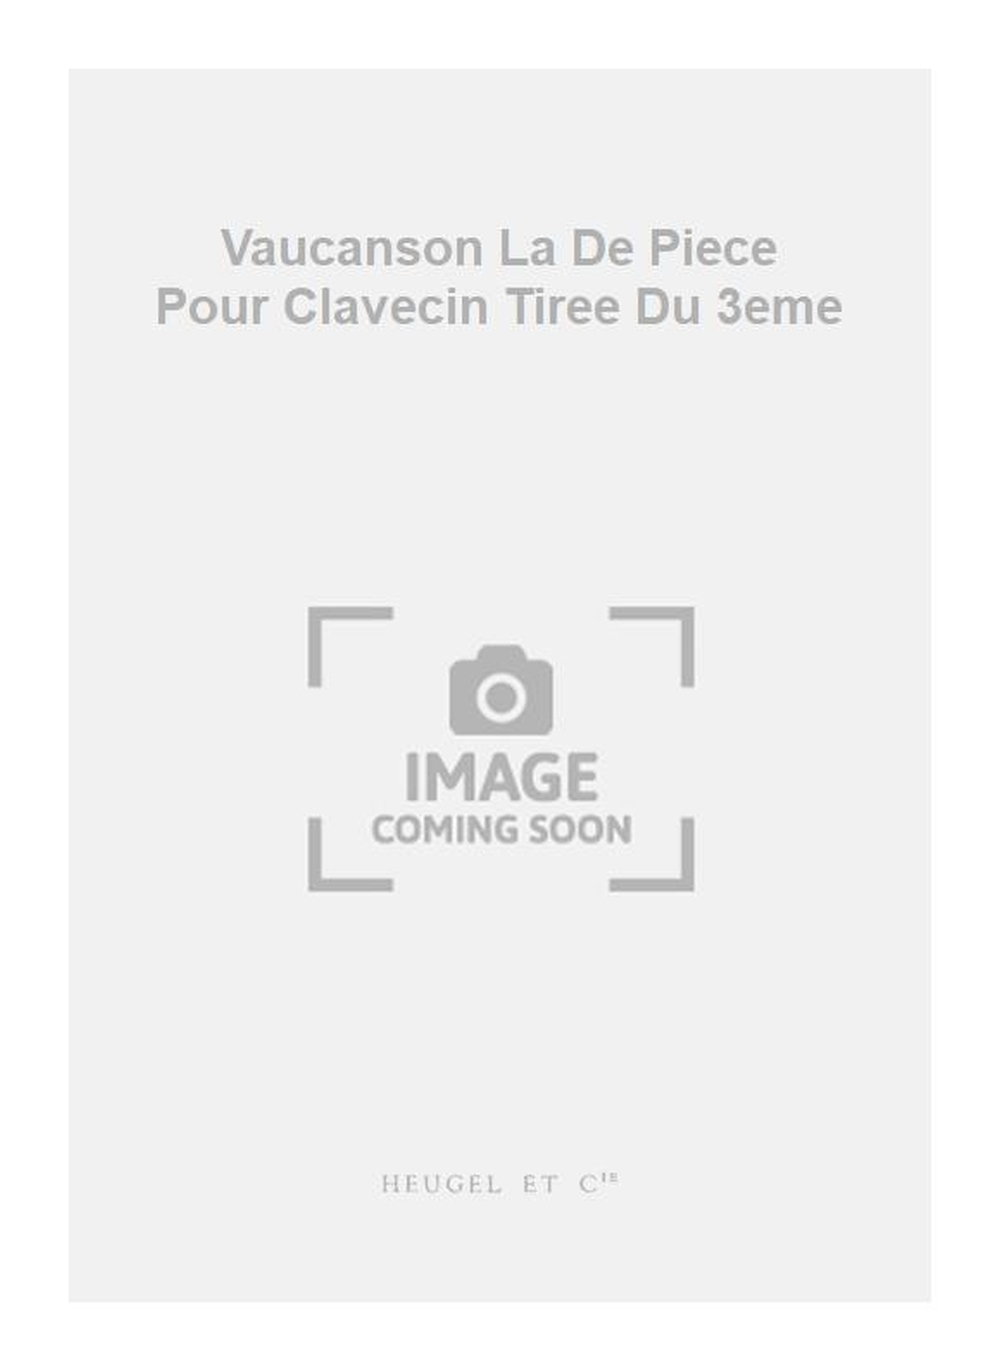 Jacques du Phly: Vaucanson La De Piece Pour Clavecin Tiree Du 3eme